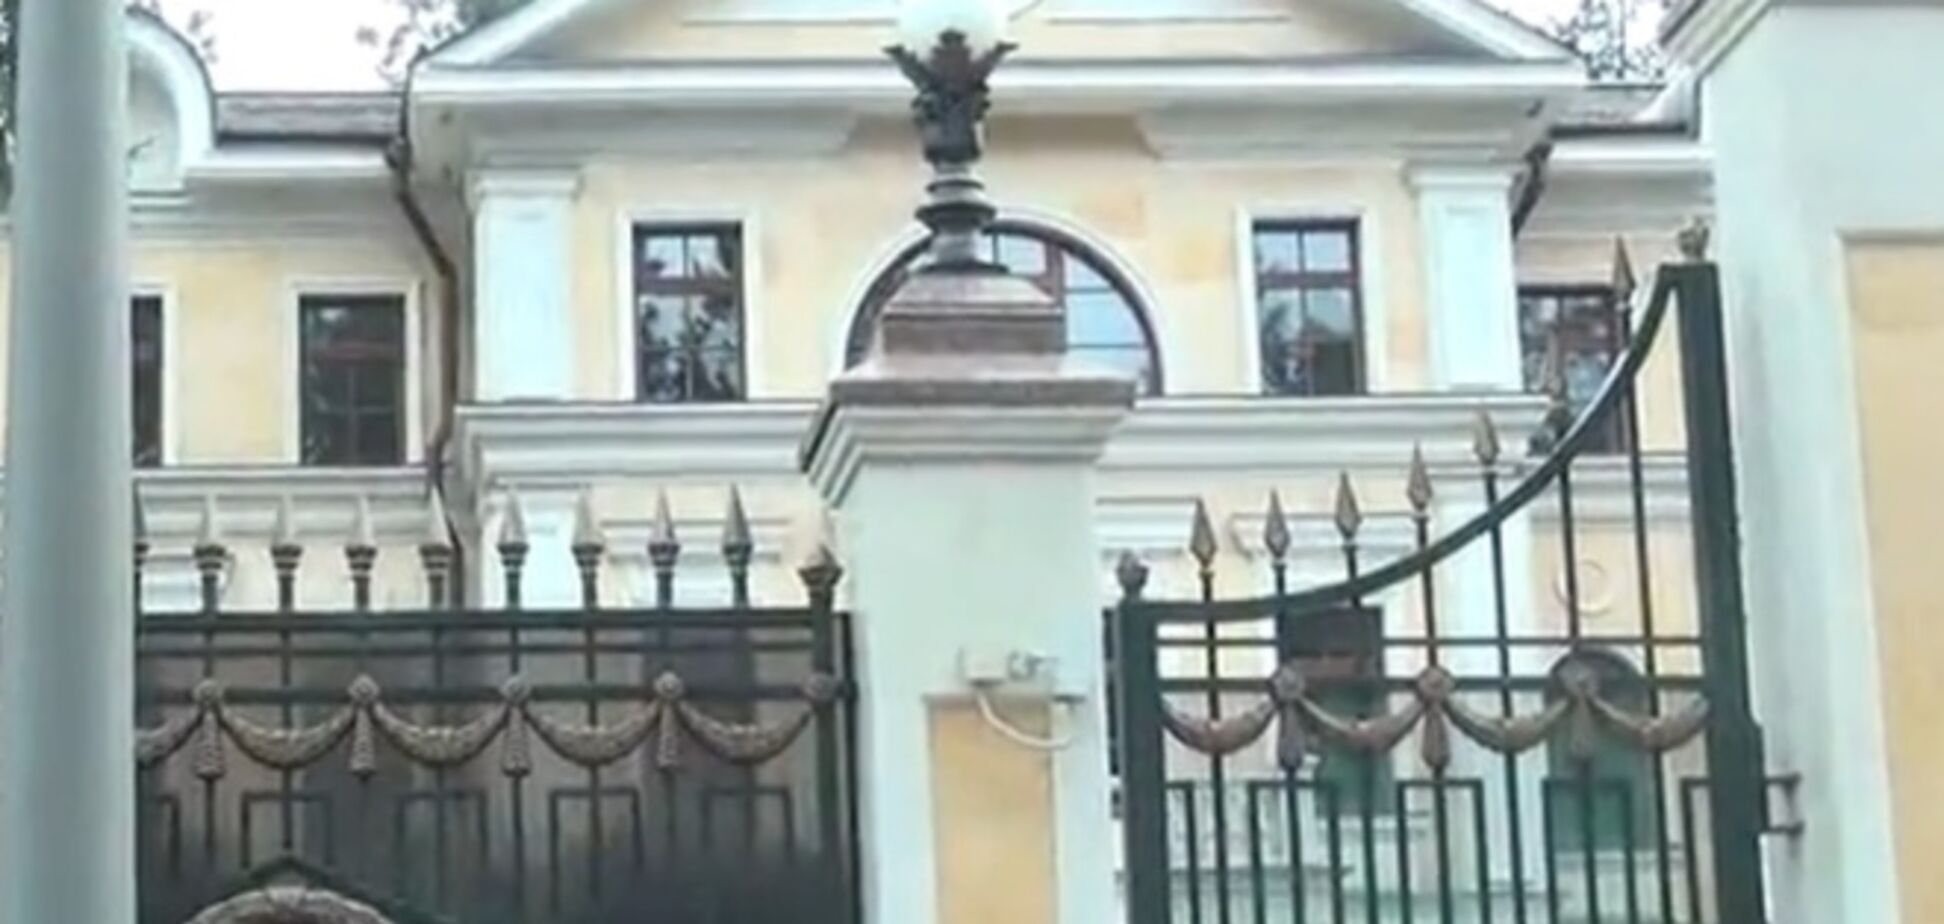 Янукович купил особняк в подмосковном поселке 'Ланшафдт' - СМИ